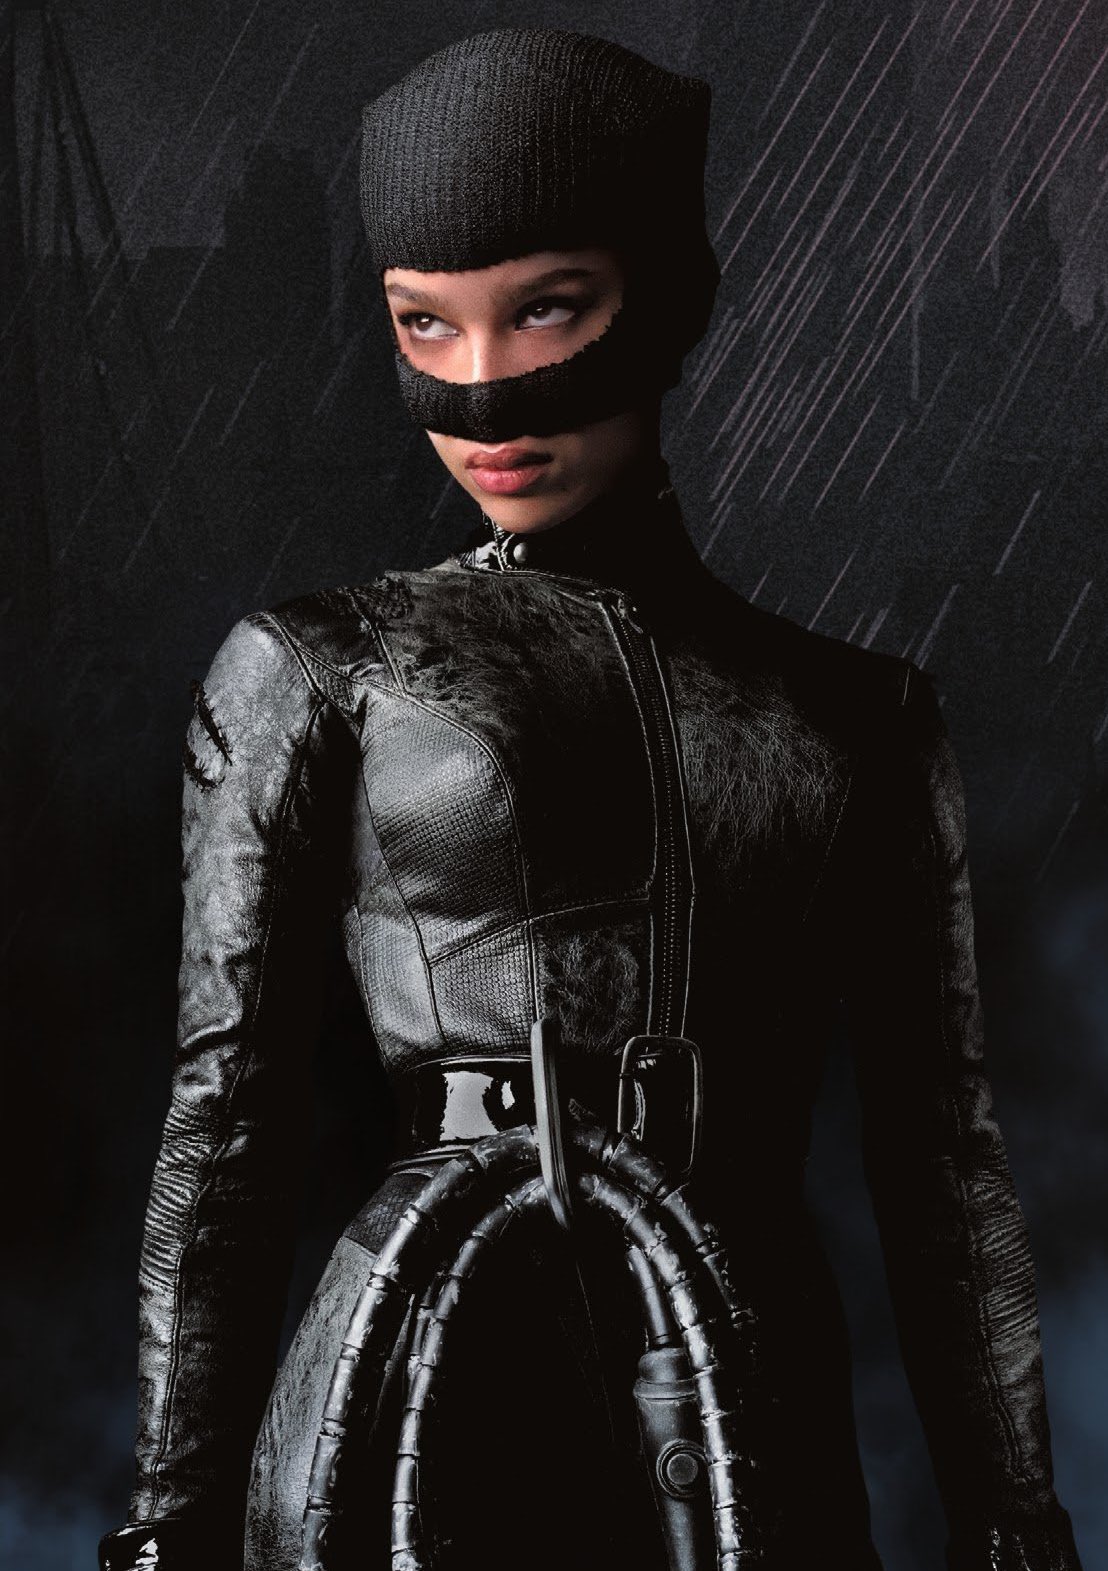 Catwoman, The Batman Universe Wiki